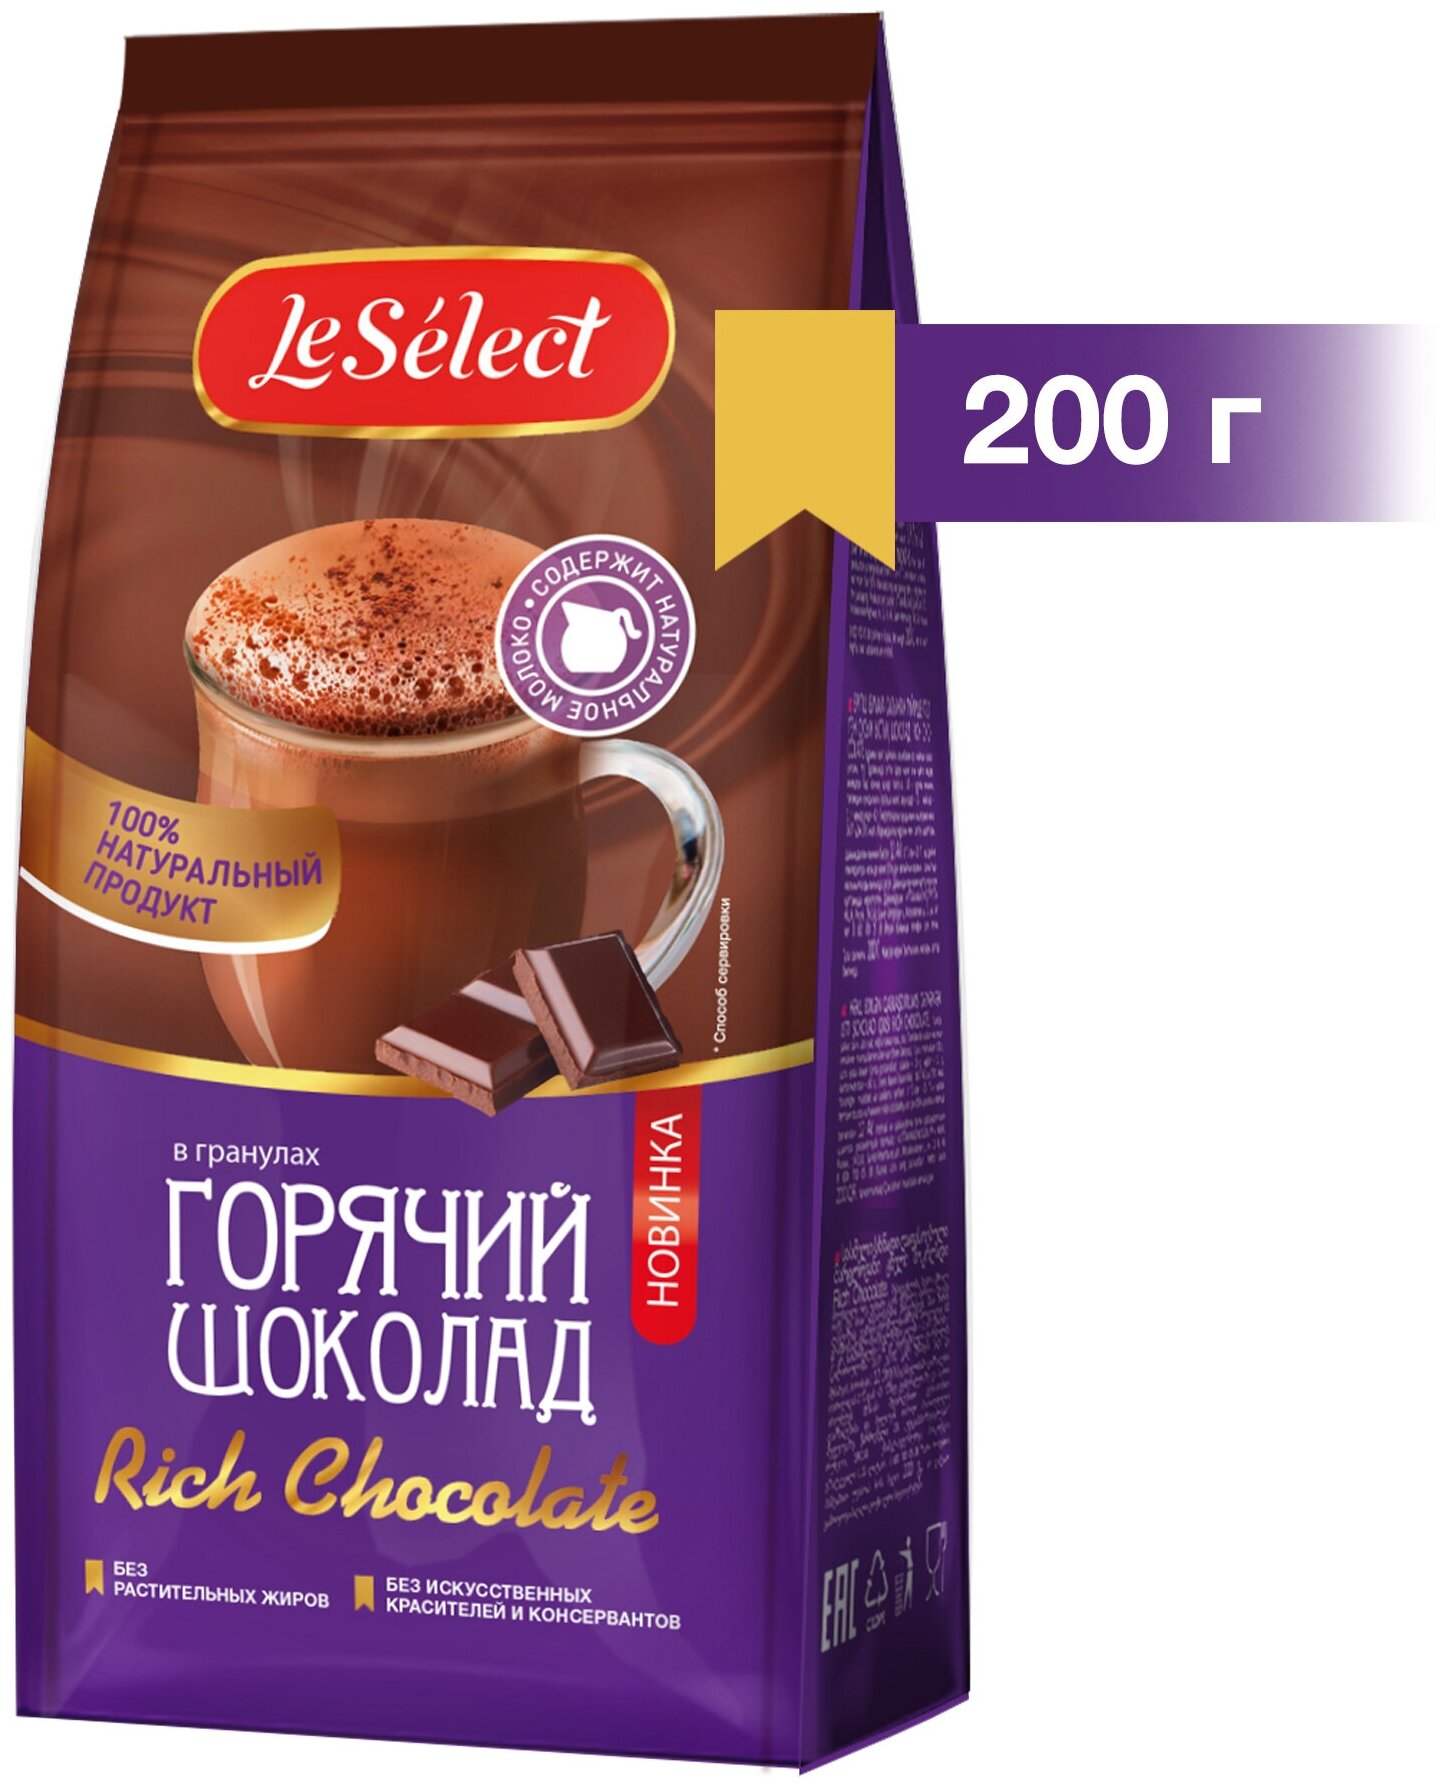 Горячий шоколад Rich Chocolate, Le Select, на натуральном молоке, гранулированный, 200 г.